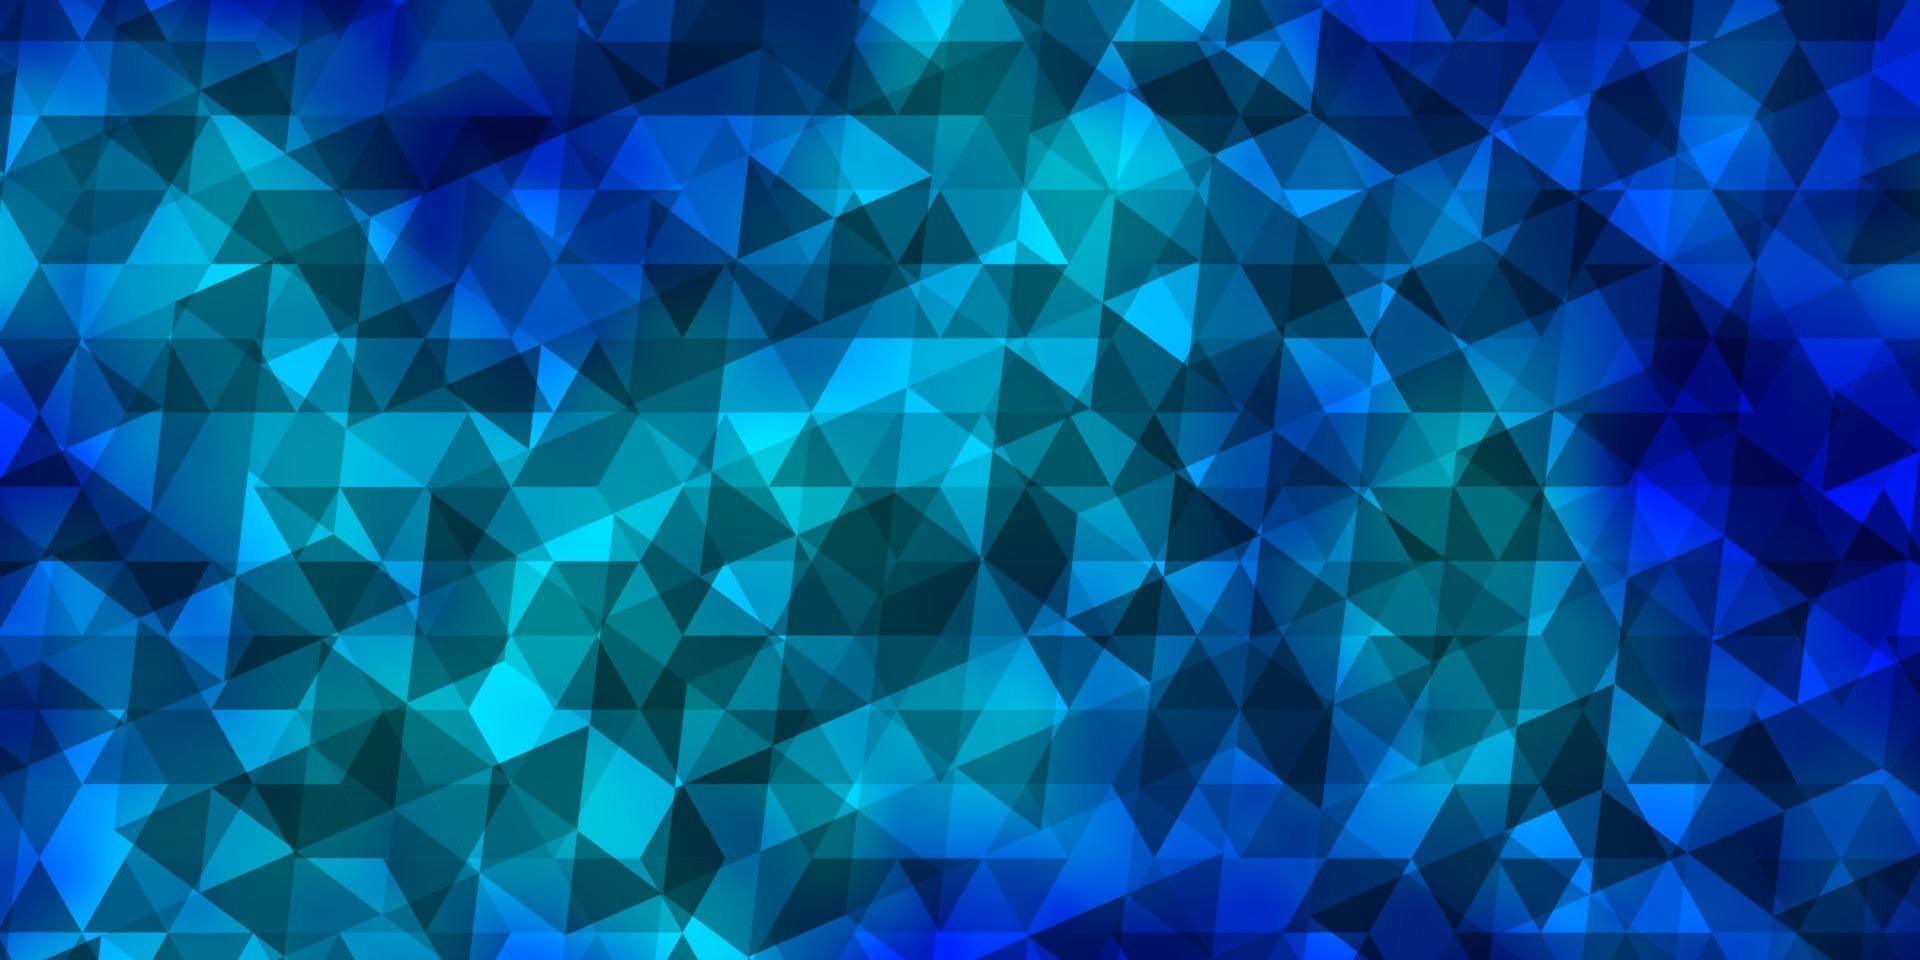 fundo azul claro do vetor com triângulos.